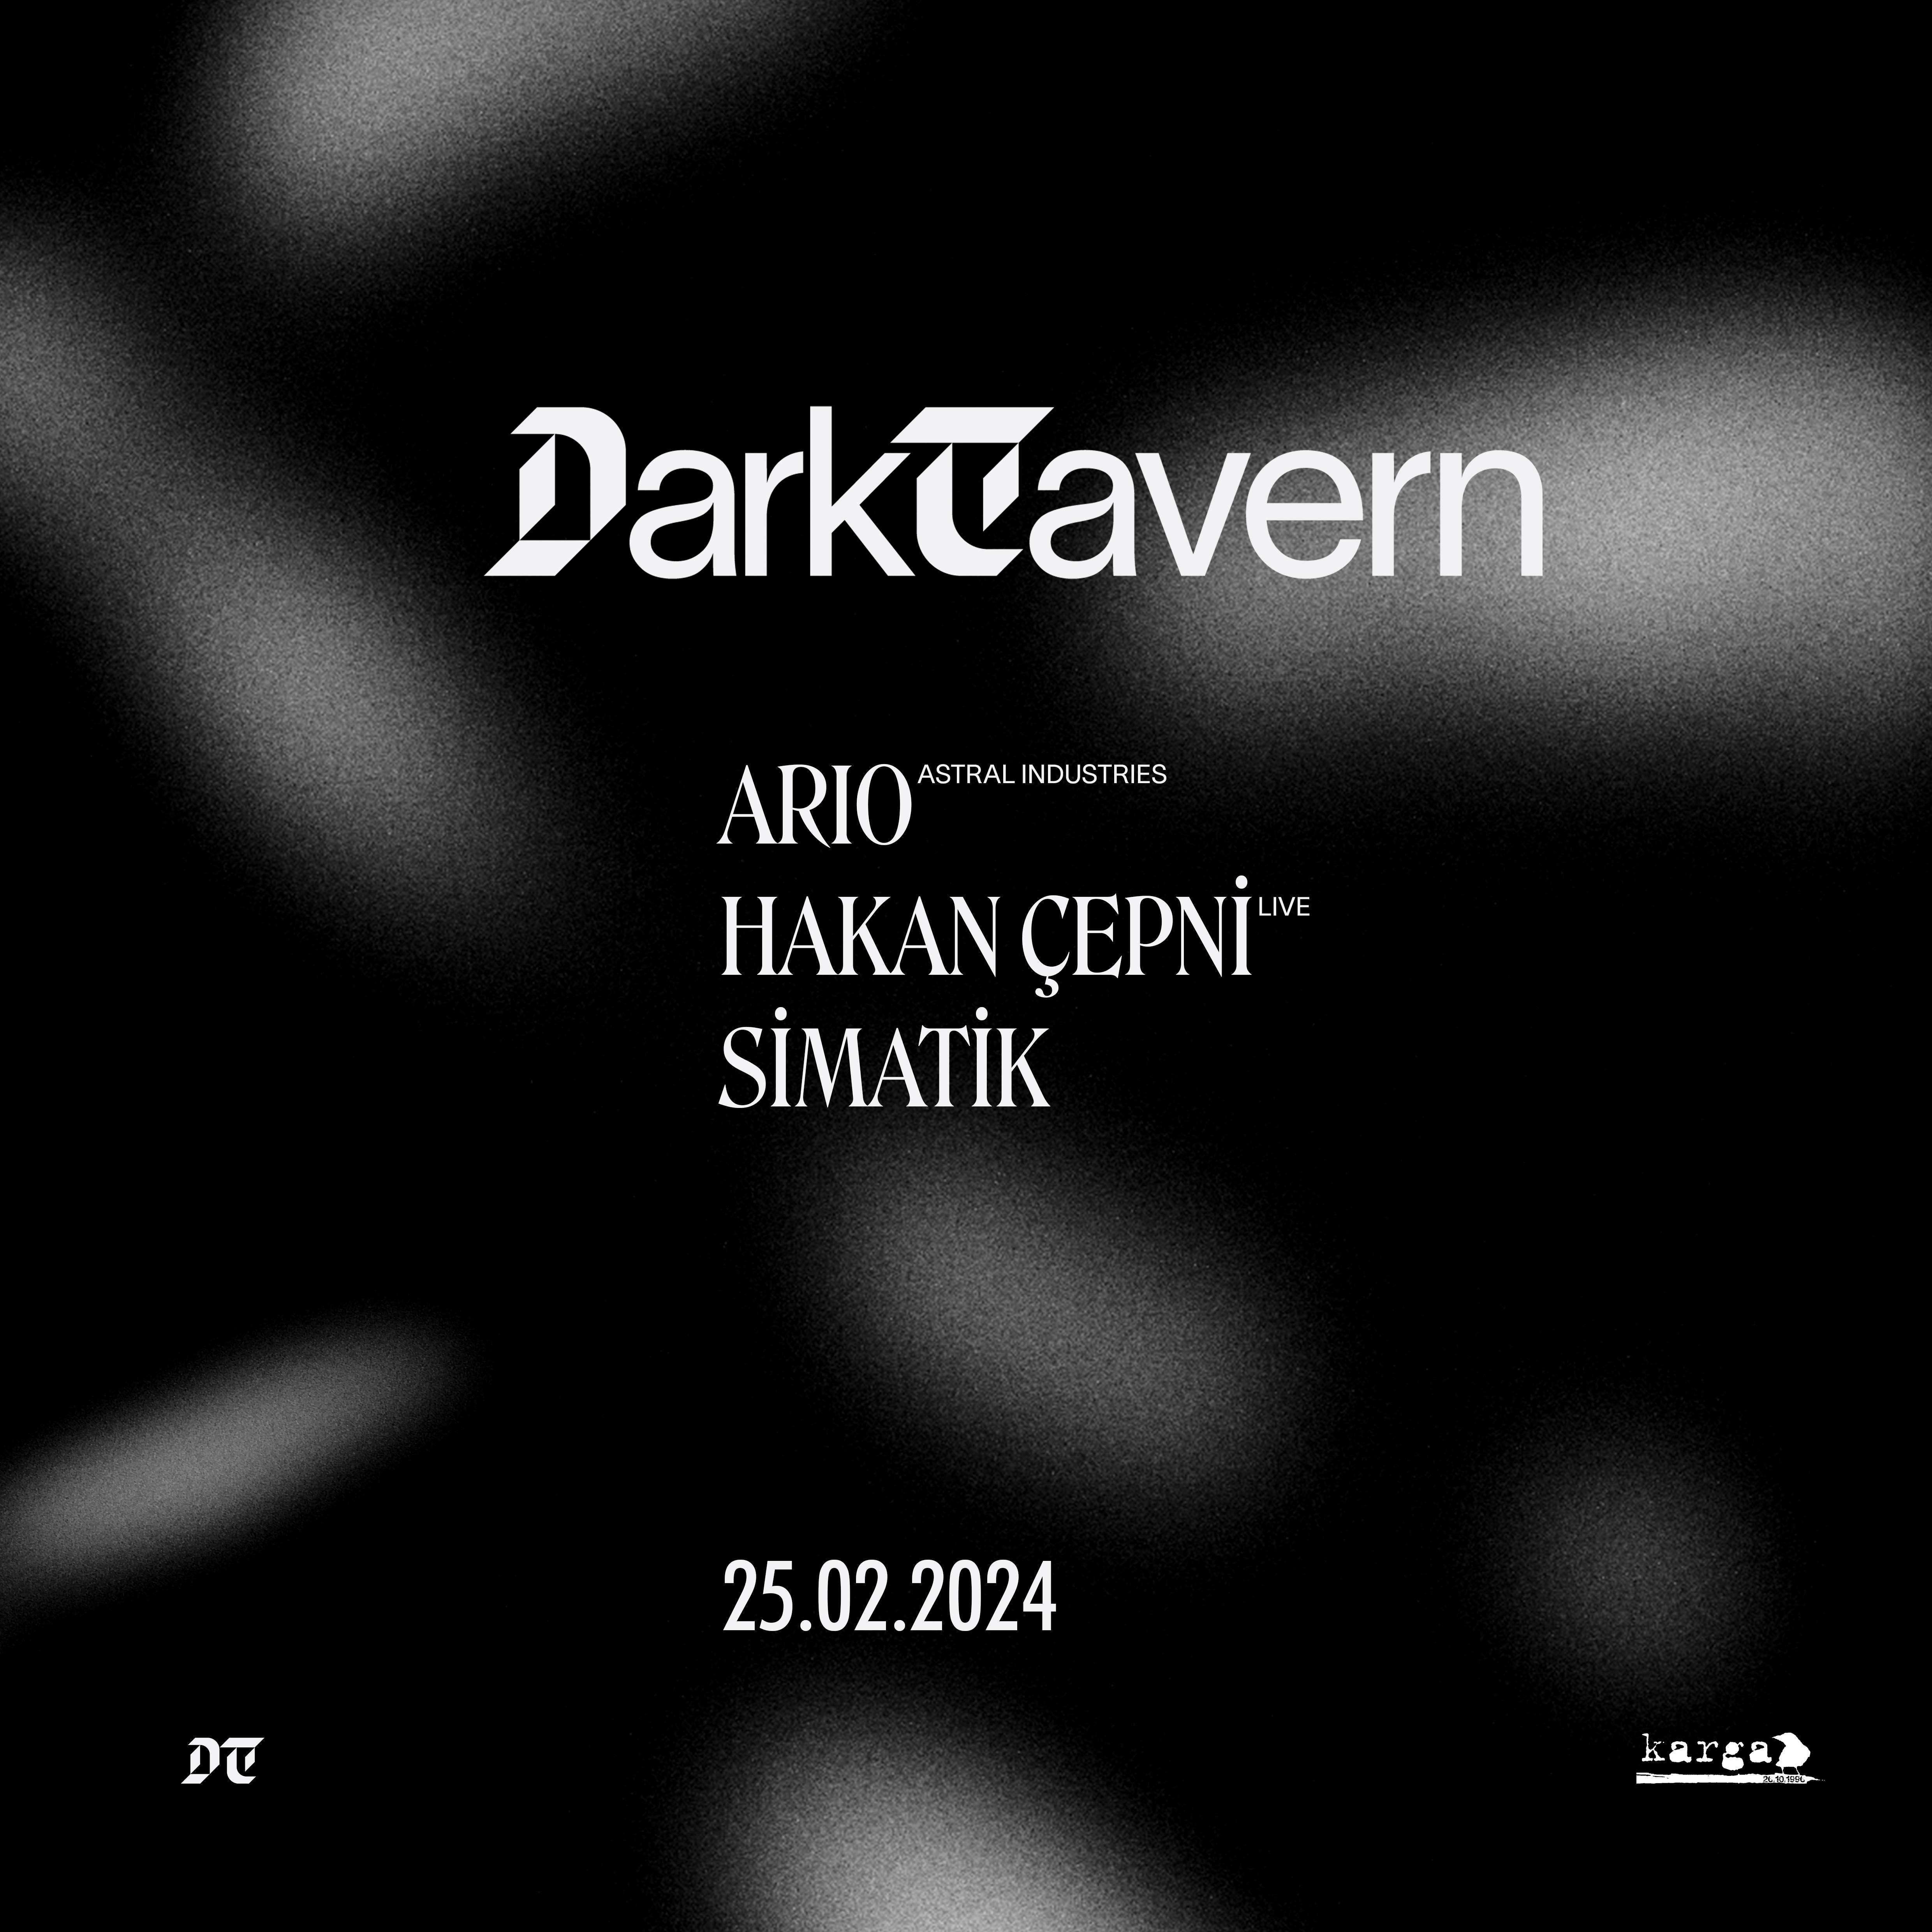 Dark Tavern - フライヤー表